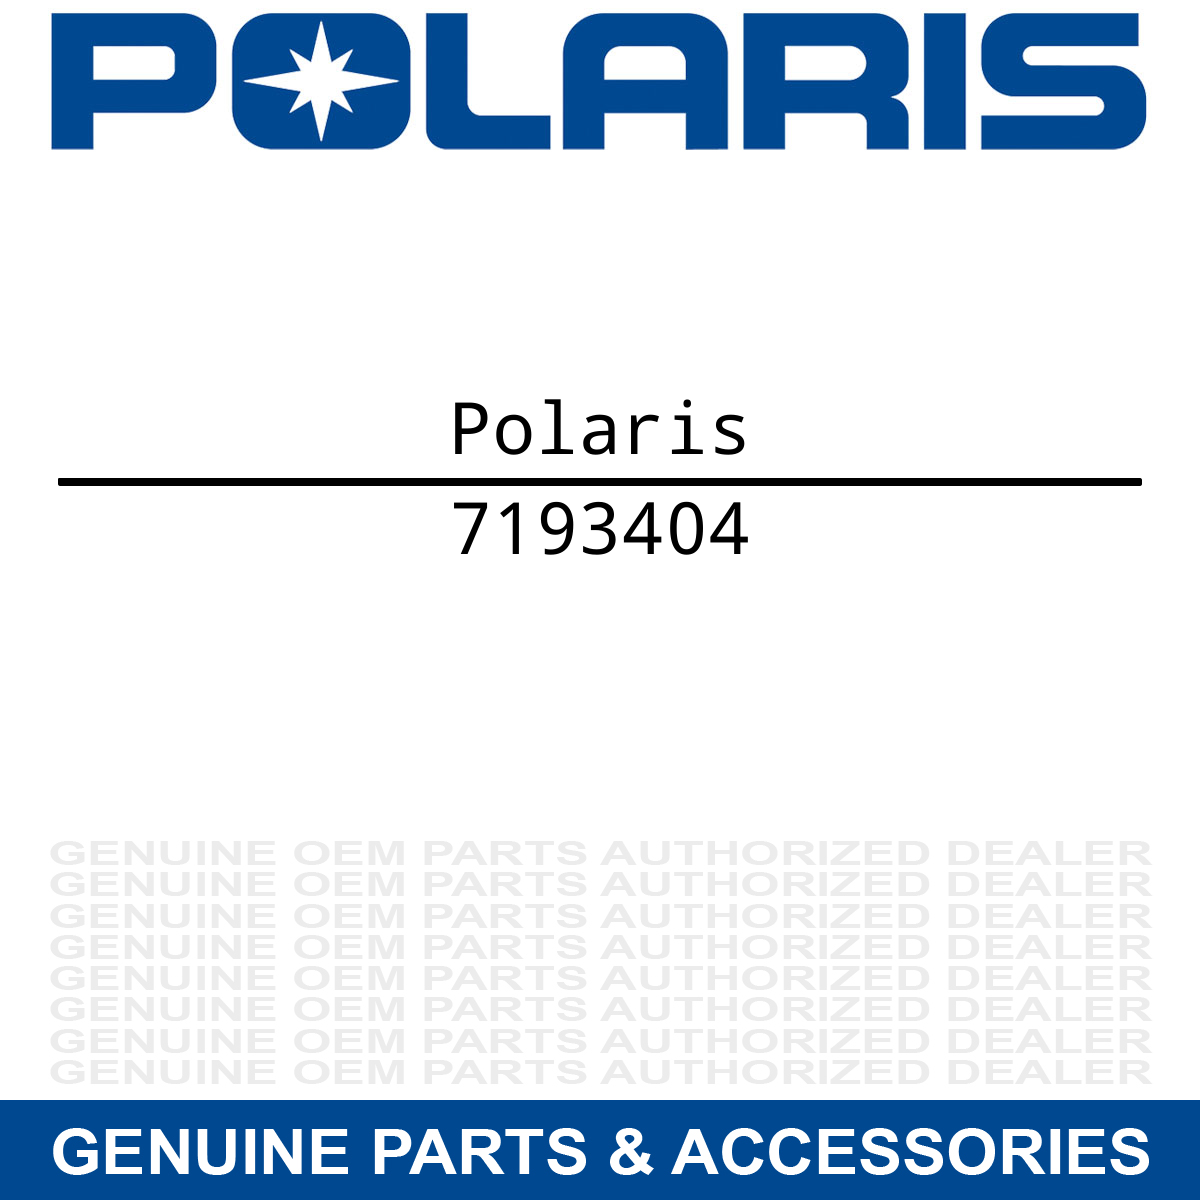 Polaris 7193404 Upper S CC Cover Decal